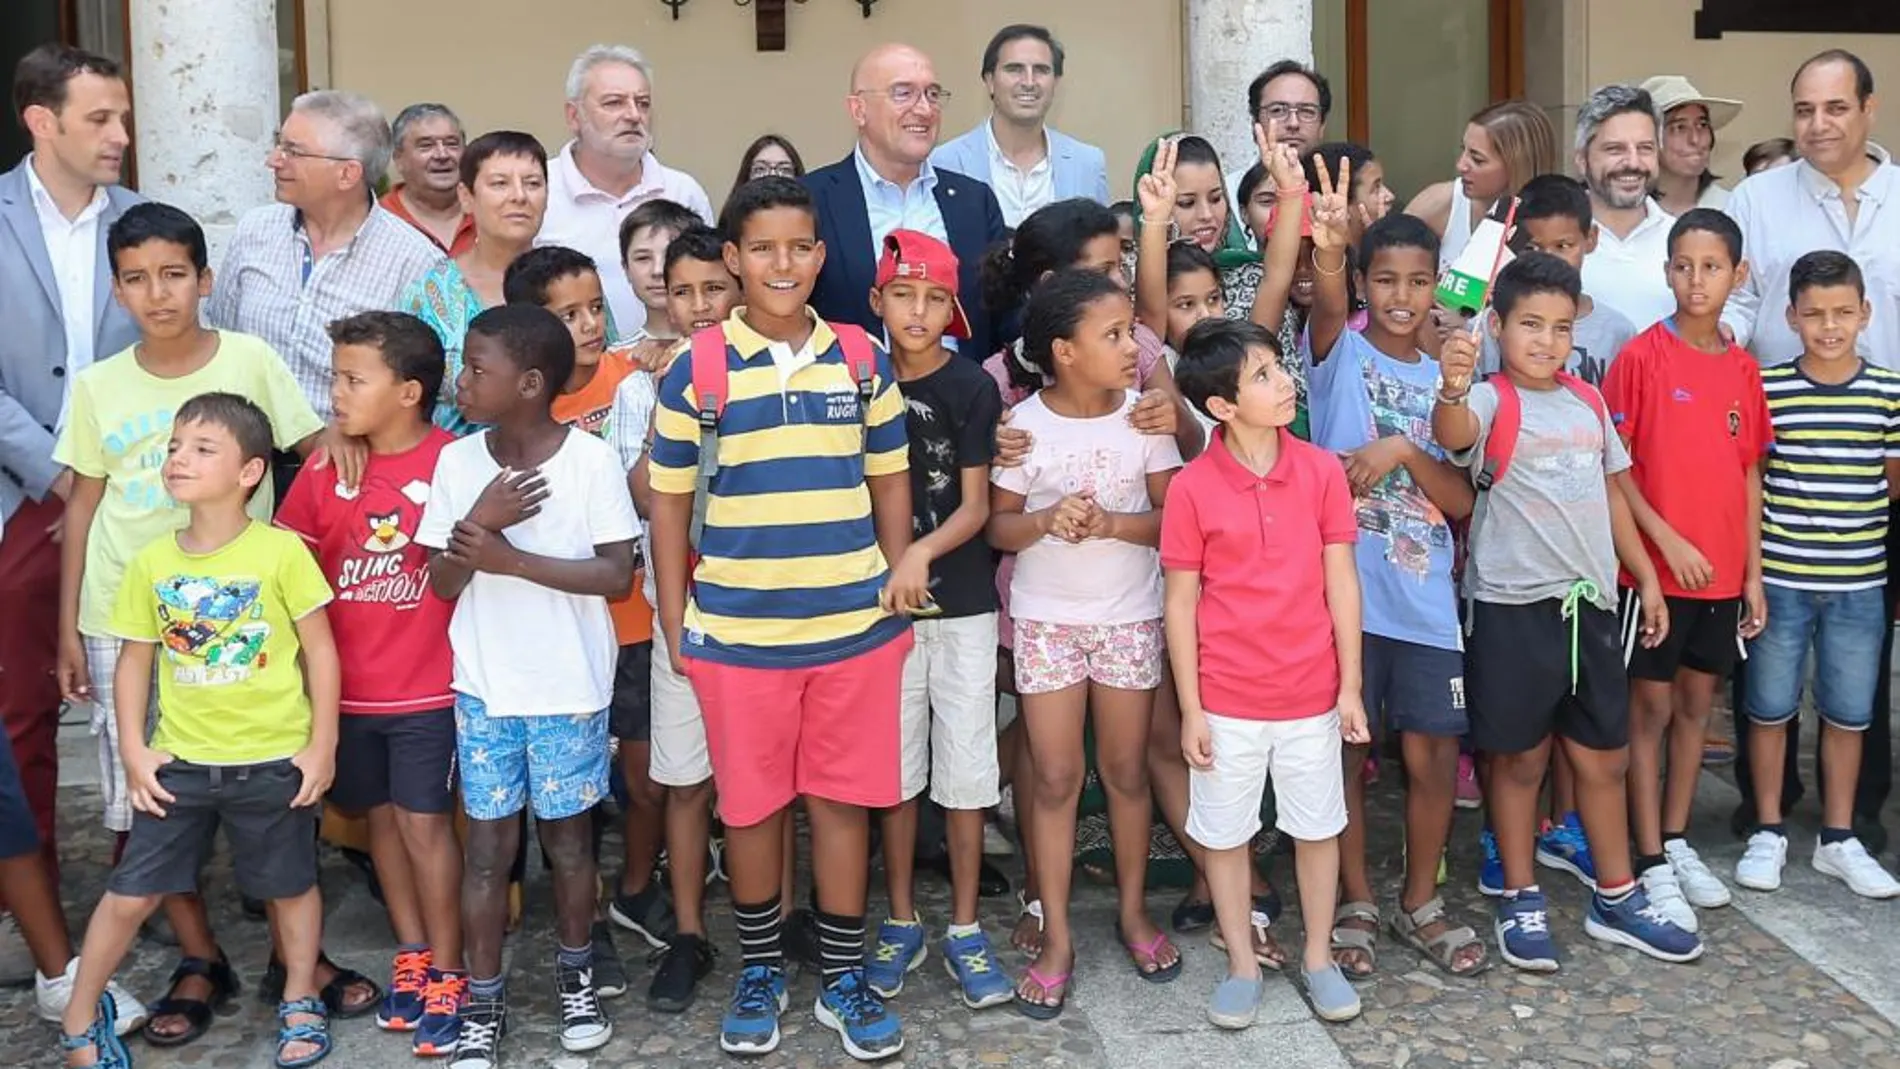 El presidente de la Diputación de Valladolid, Jesús Julio Carnero, ofrece una recepción a los niños saharauis acogidos este verano por familias vallisoletanas